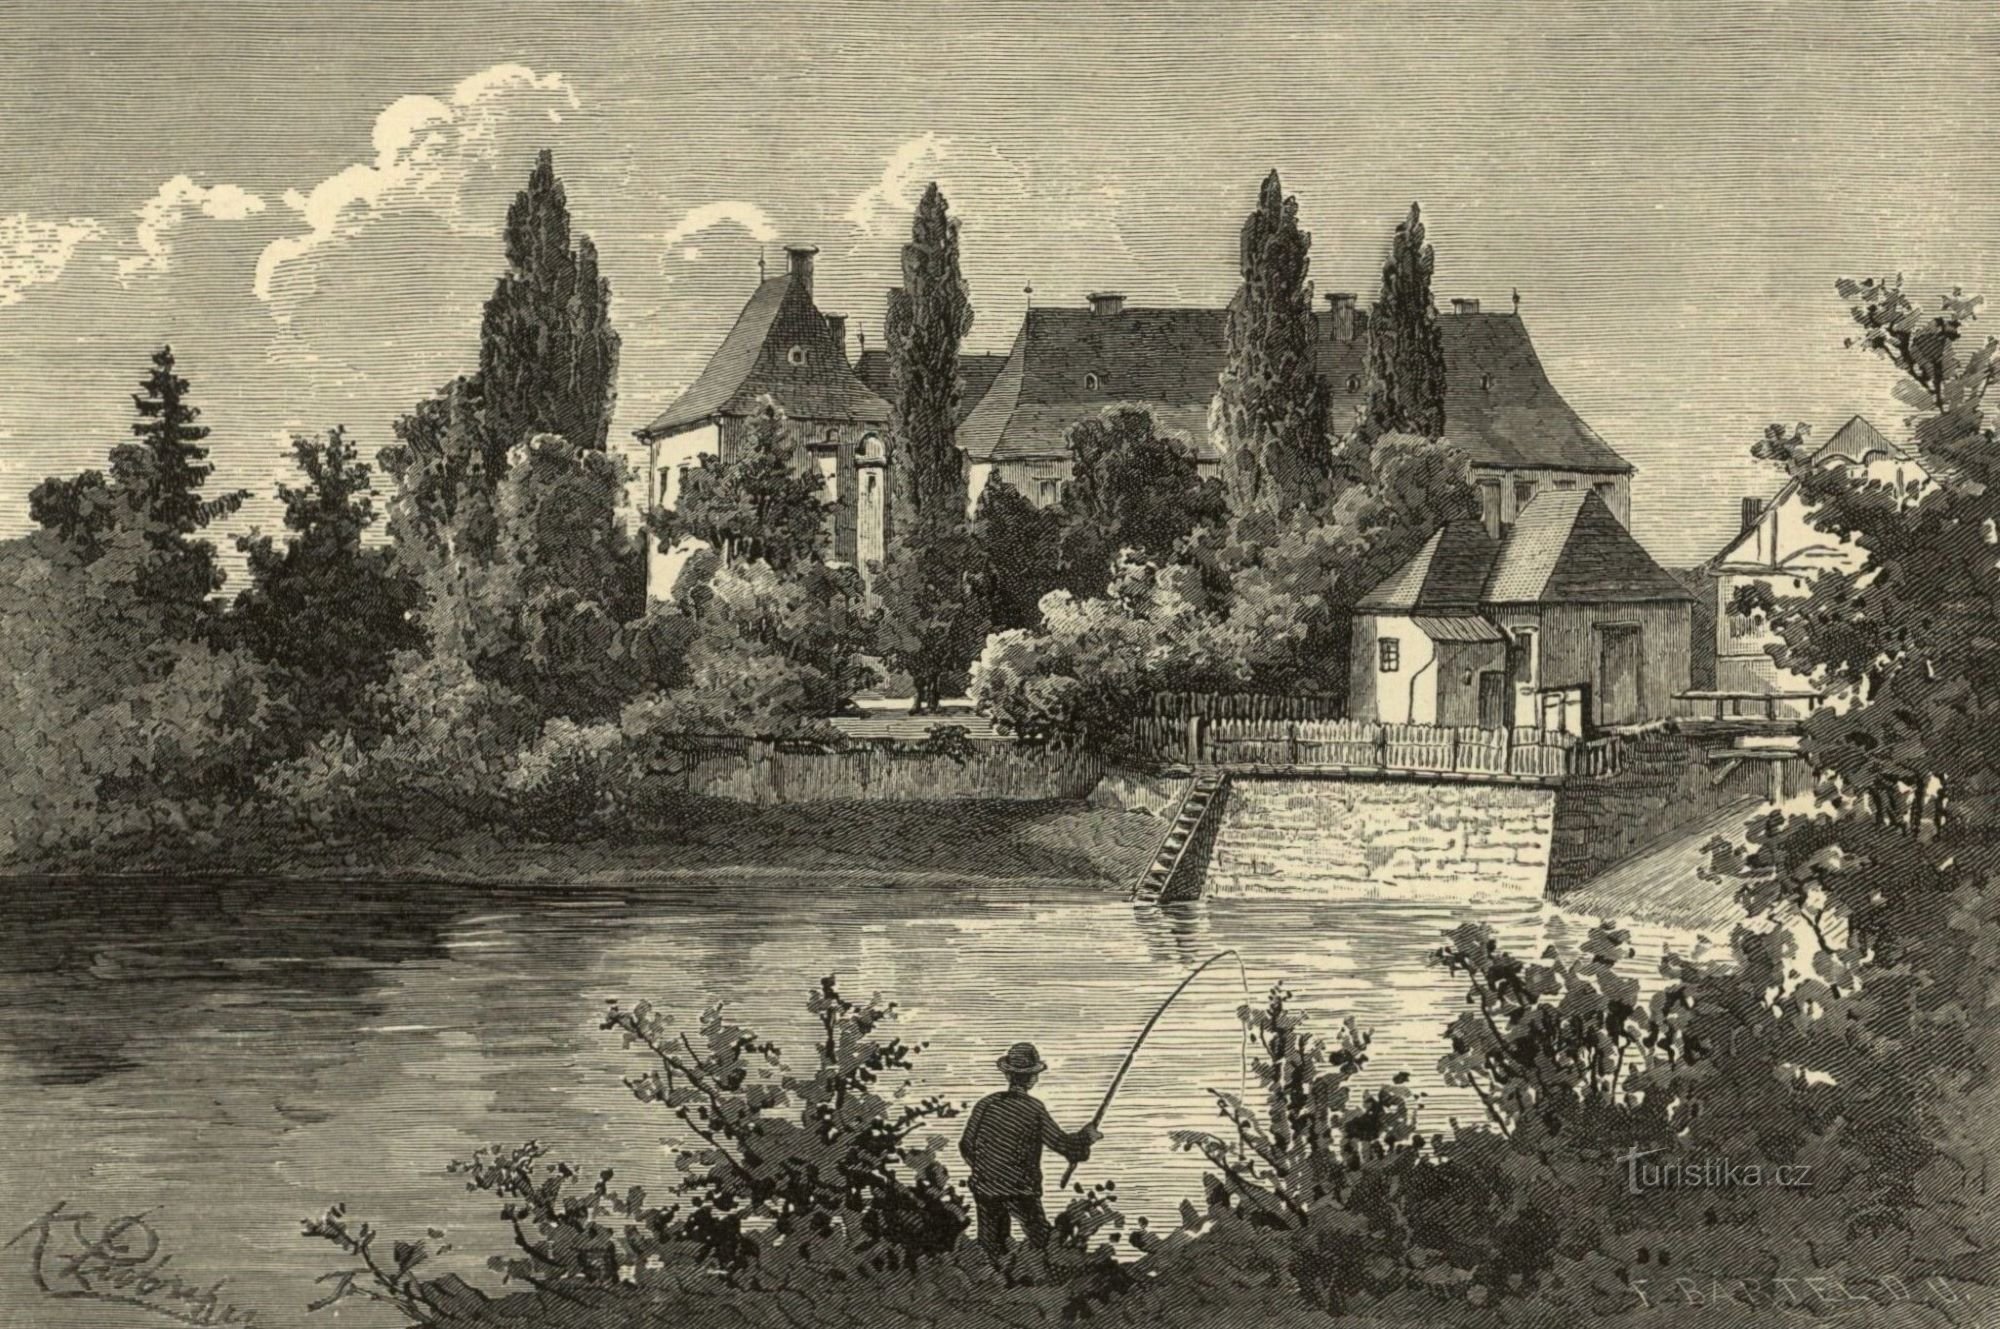 Le château de Smiřice dans la seconde moitié du XIXe siècle